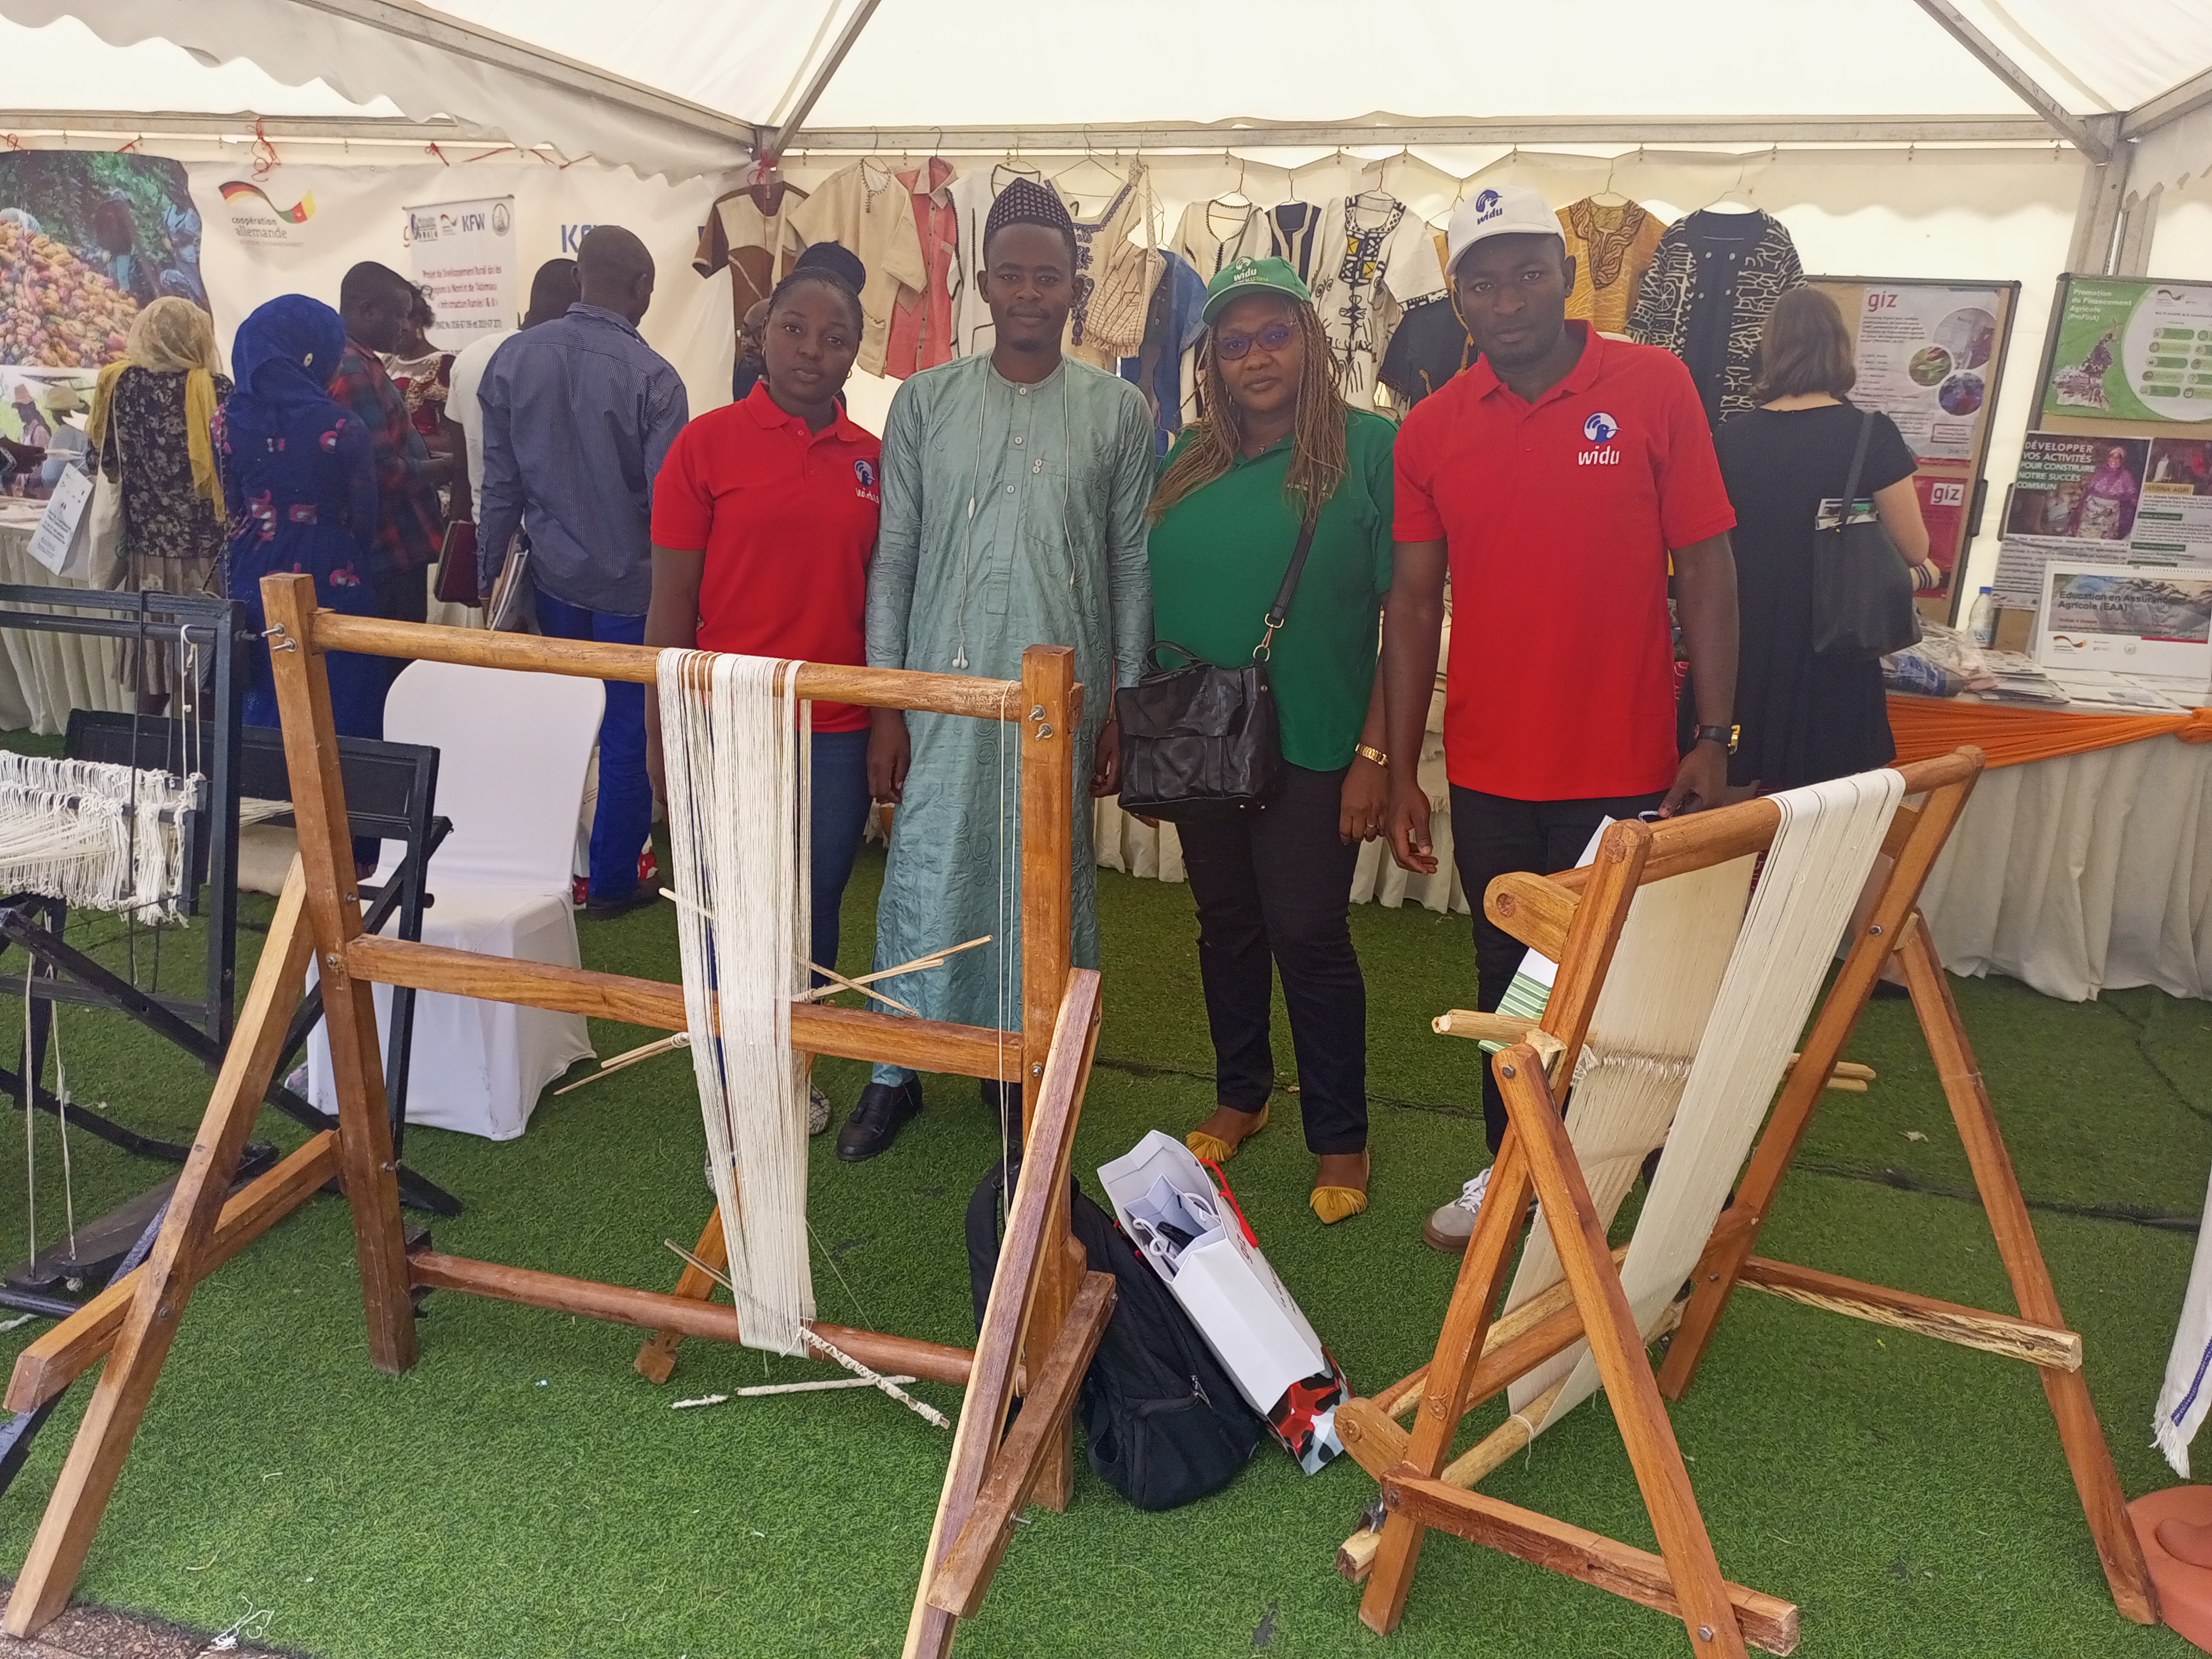 WIDU Team Cameroon presents the project activites at Journée de la Coopération Germano-Camerounaise